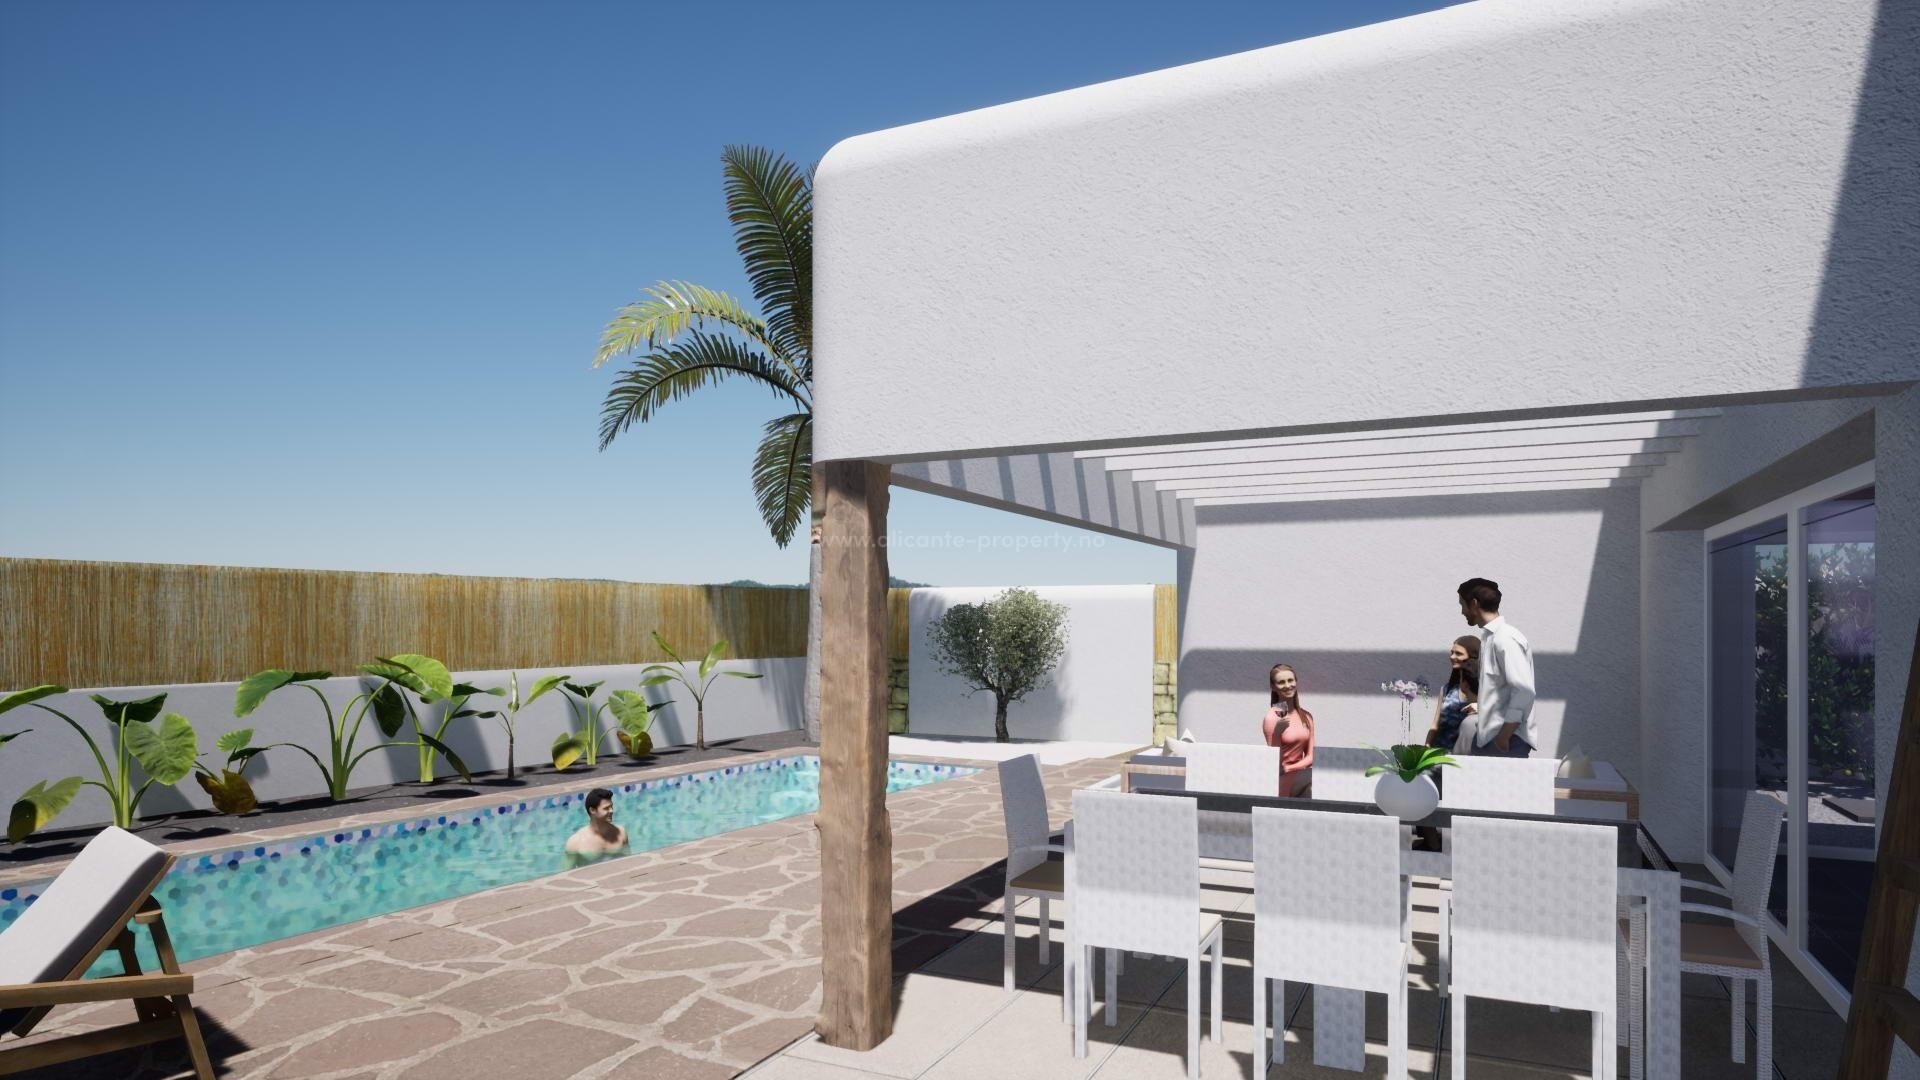 Fantastiske nybyggede villaer i Ibiza-stil i Alfaz del Pi, 3 soverom, 2 bad, fint basseng og terrasse